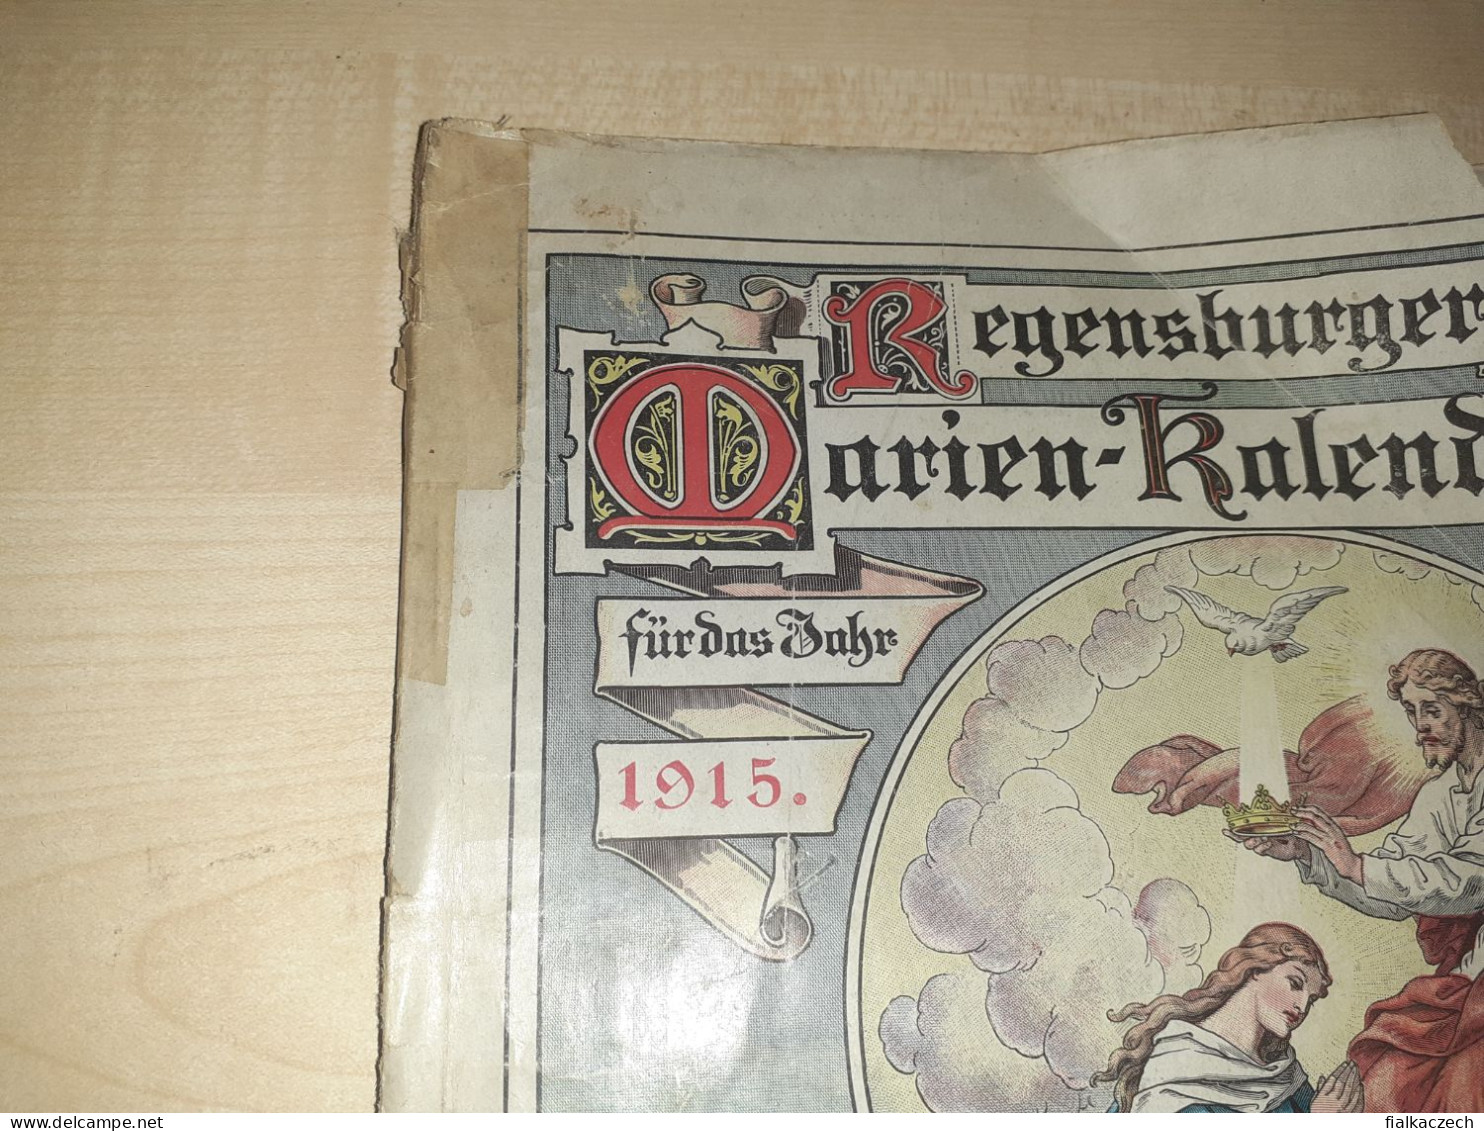 Regensburger Marien-Kalender, 1915, Regensburg Und Rom - Kalenders